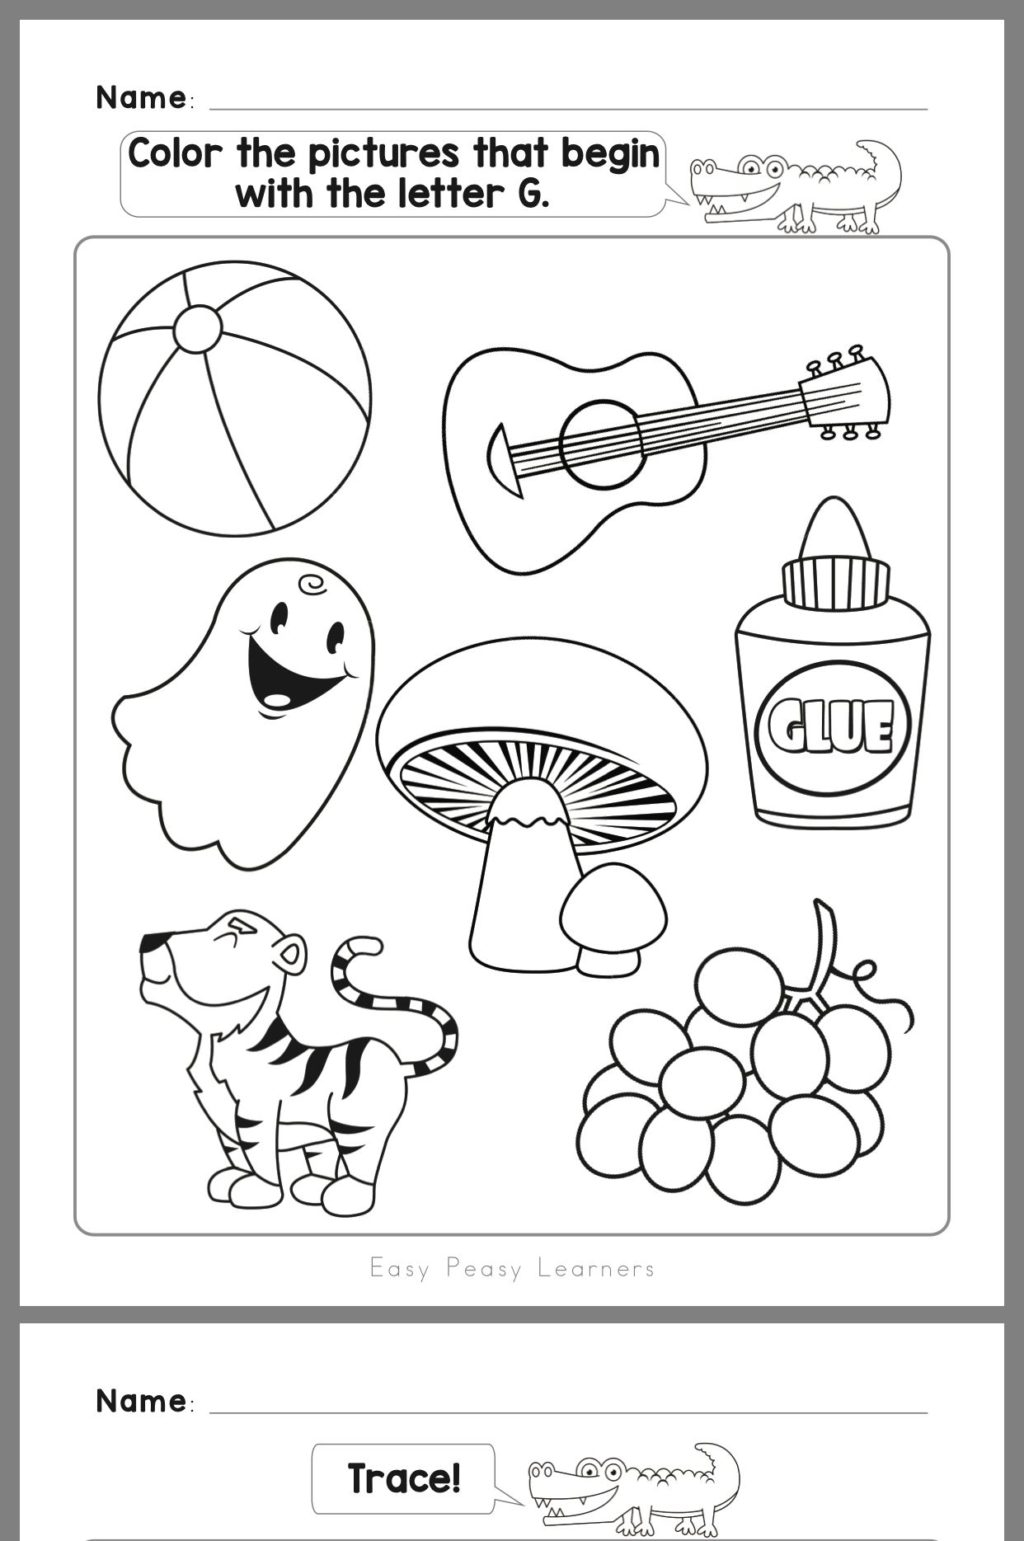 Worksheet ~ Kindergarten Worksheets First Grade Printable inside Letter G Worksheets For First Grade